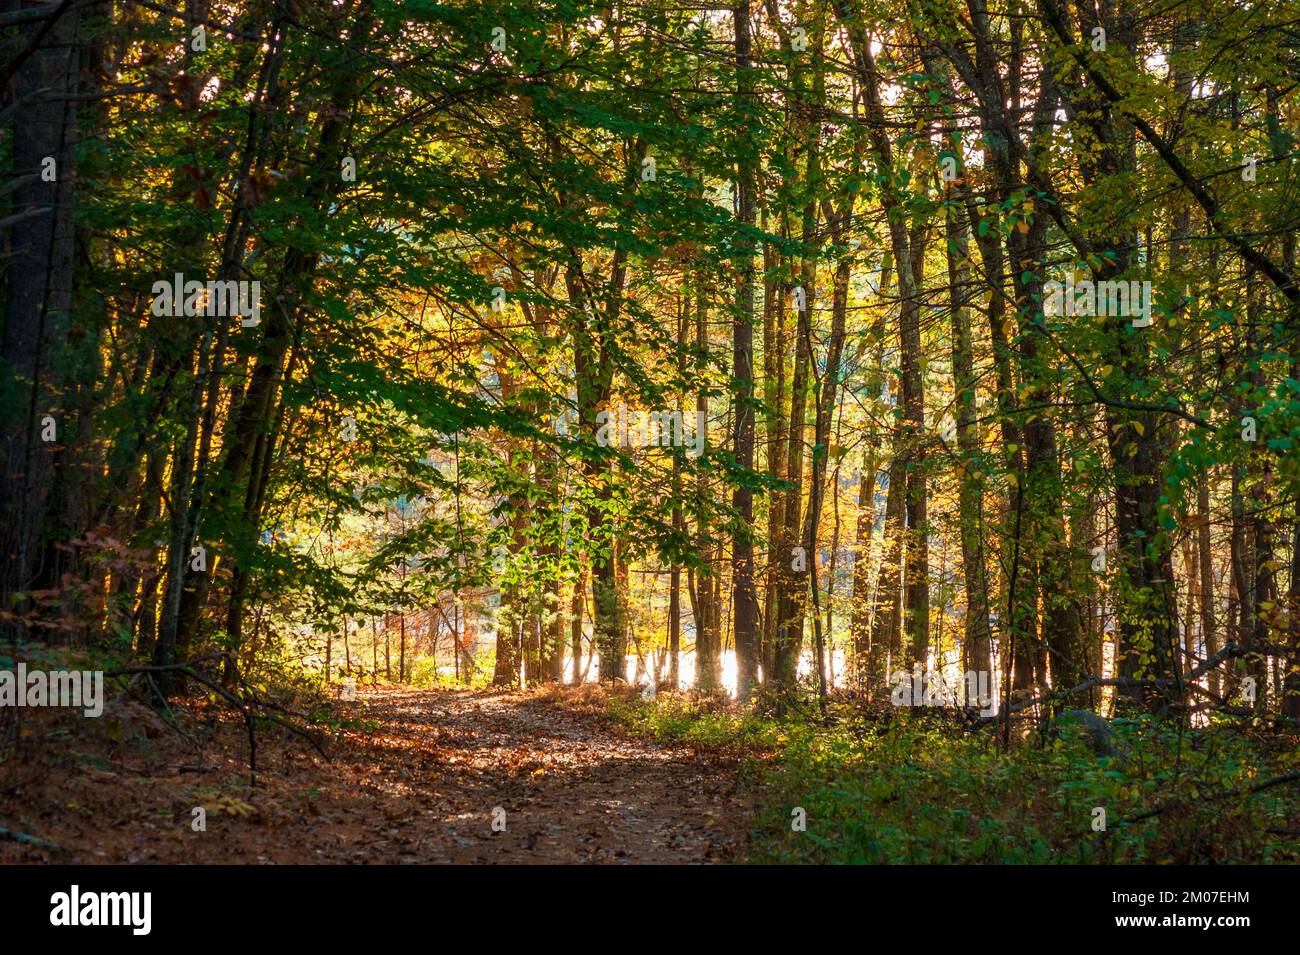 Chemin à travers une forêt pittoresque. Hêtres, érables et chênes aux couleurs d'automne. Le soleil brille à travers la canopée. Pic de feuillage en Nouvelle-Angleterre. Banque D'Images